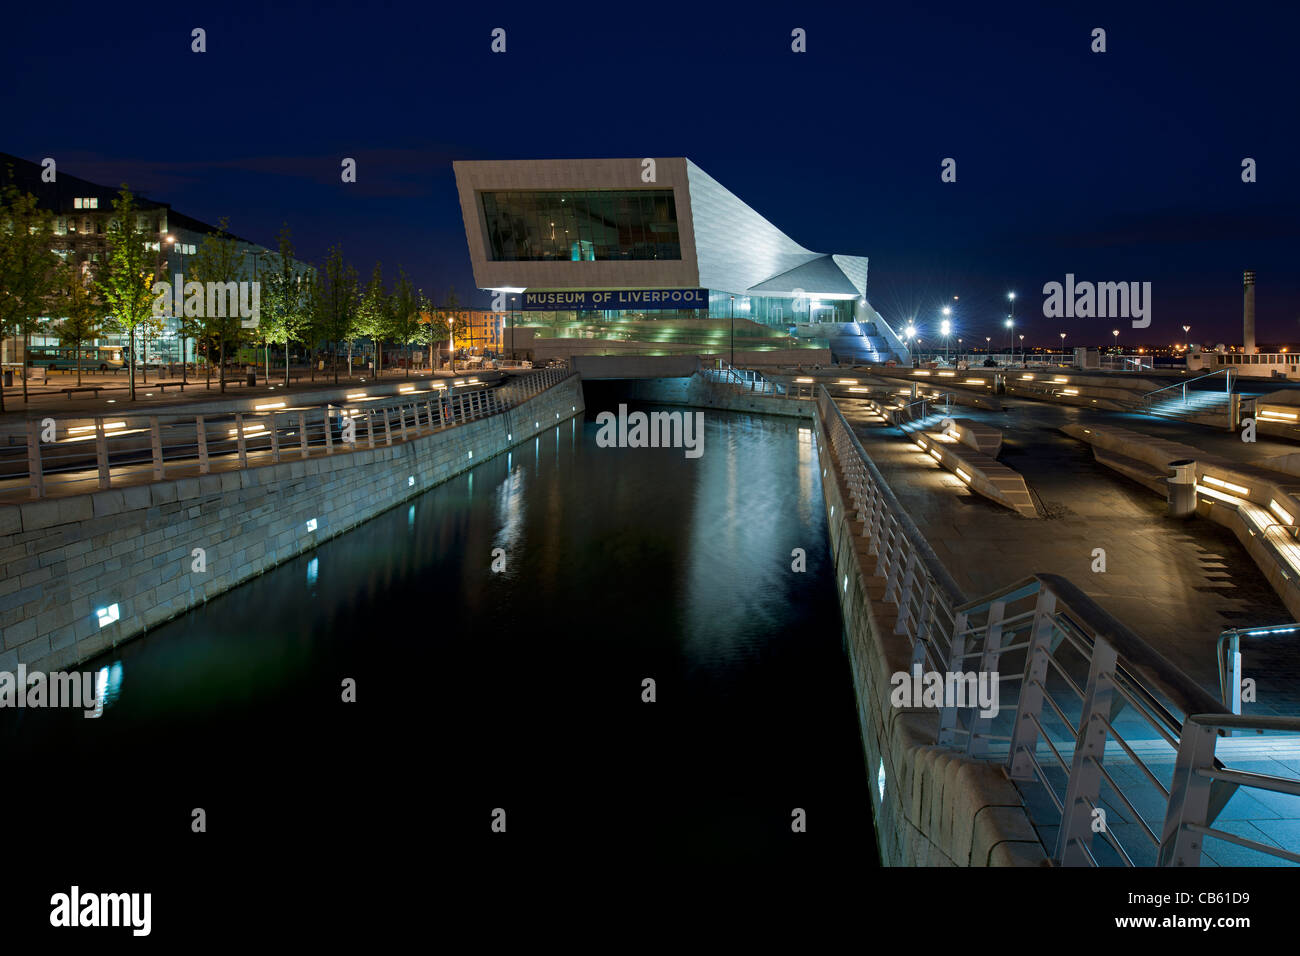 Vista notturna di Museum di Liverpool attraverso il Leeds Liverpool Canal e la nuova sfera pubblica al Pier Head, Liverpool. Foto Stock